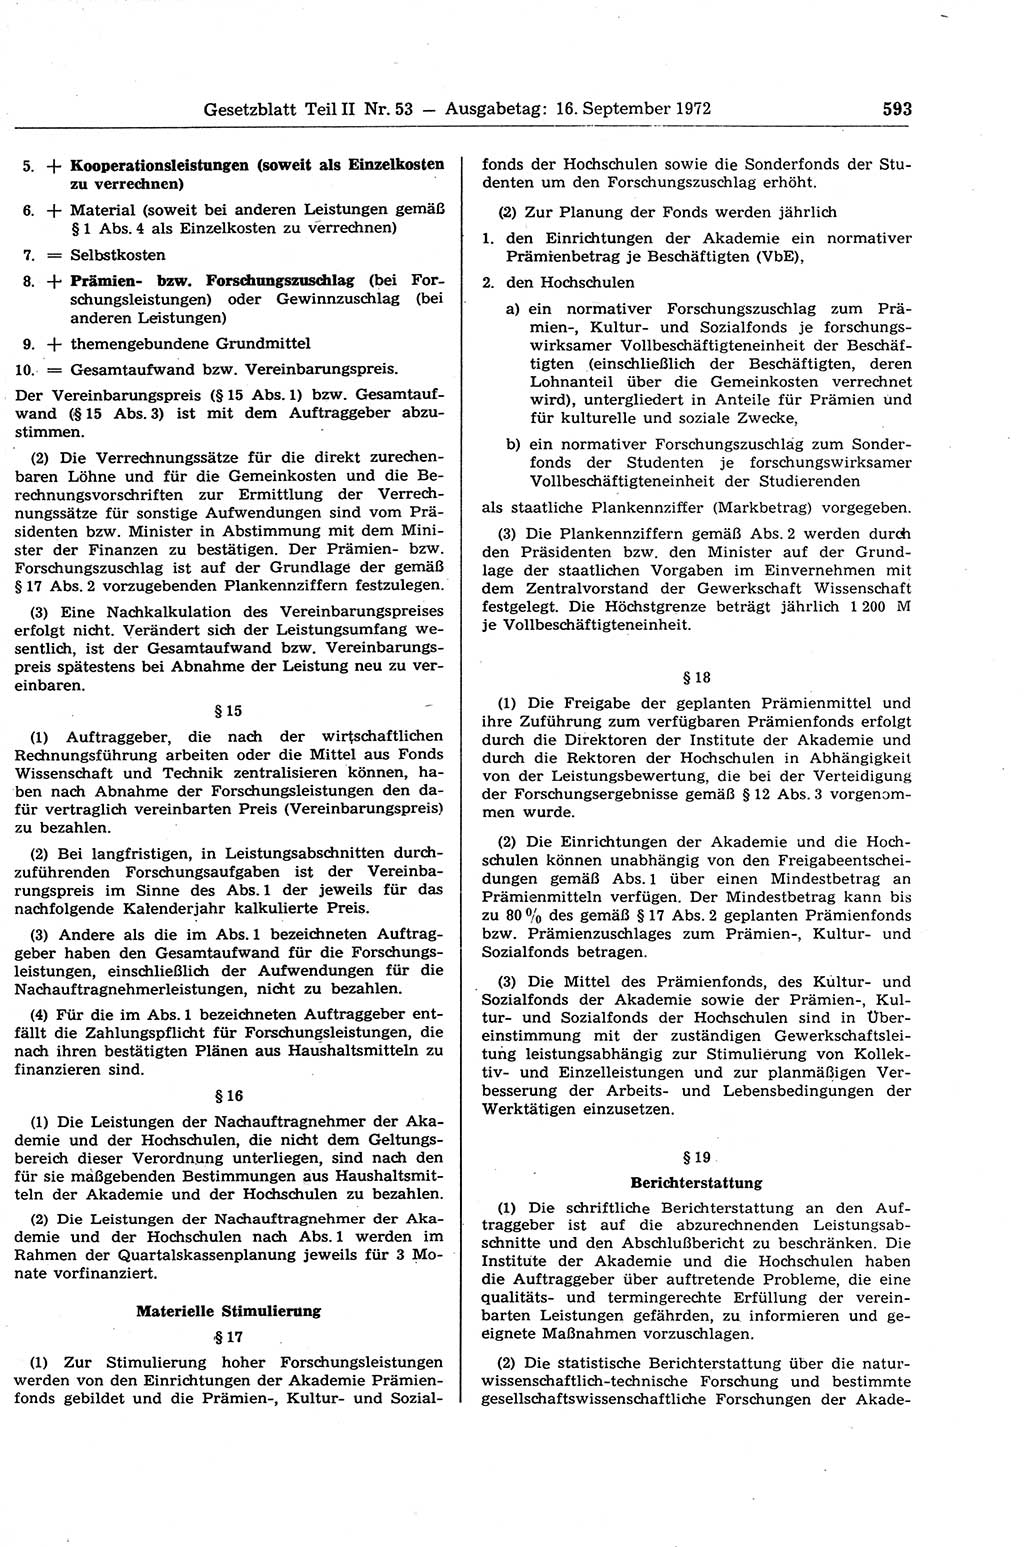 Gesetzblatt (GBl.) der Deutschen Demokratischen Republik (DDR) Teil ⅠⅠ 1972, Seite 593 (GBl. DDR ⅠⅠ 1972, S. 593)